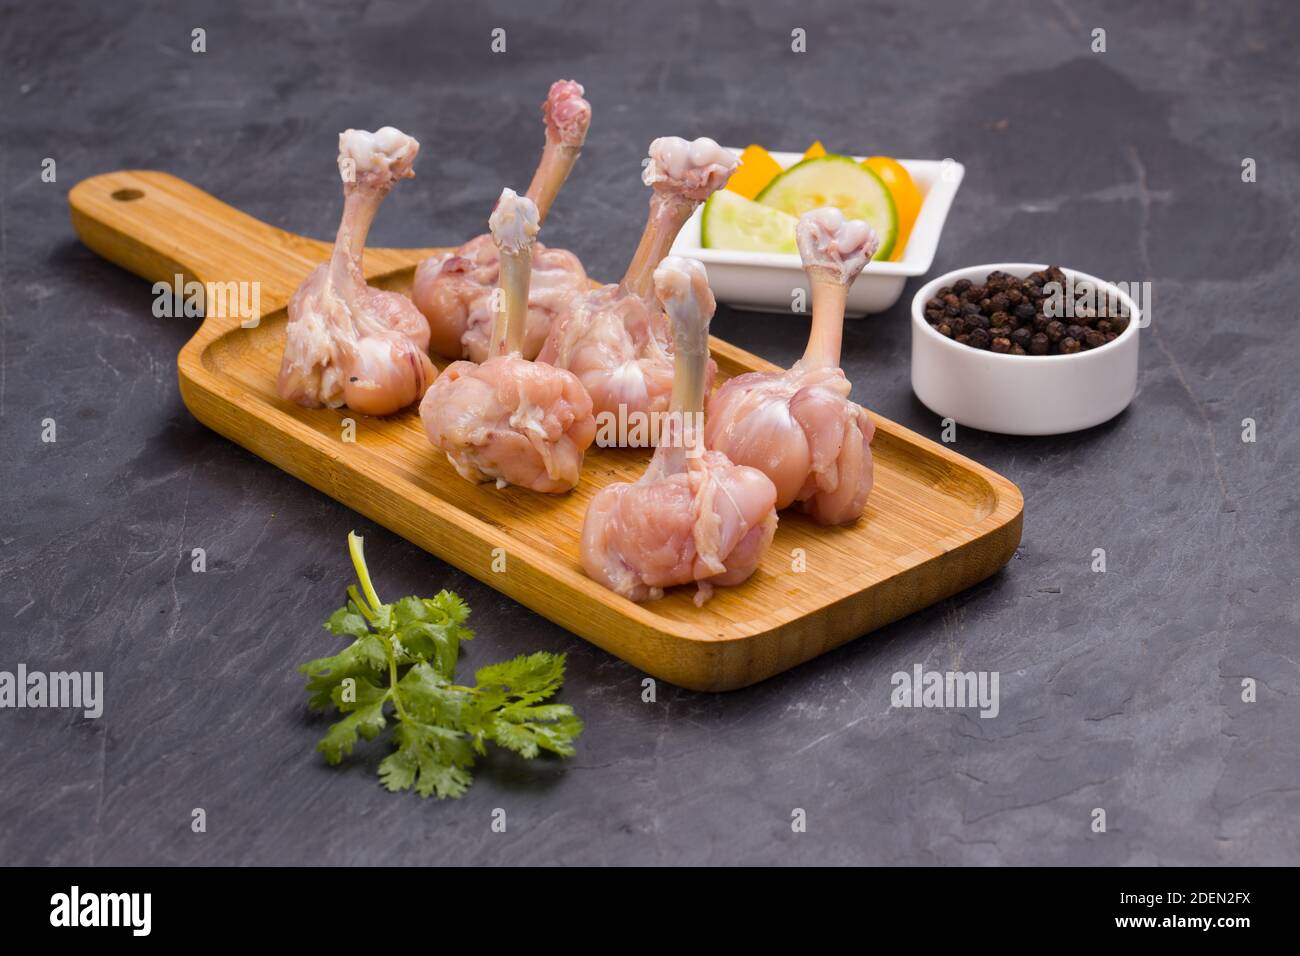 Rohes Huhn Lollipop, sechs Stücke Huhn Lollipop auf einem angeordnet Servierbrett mit schwarzem Pfeffer, Korianderblatt und Gurkenscheiben auf Hintergrund-wlan Stockfoto